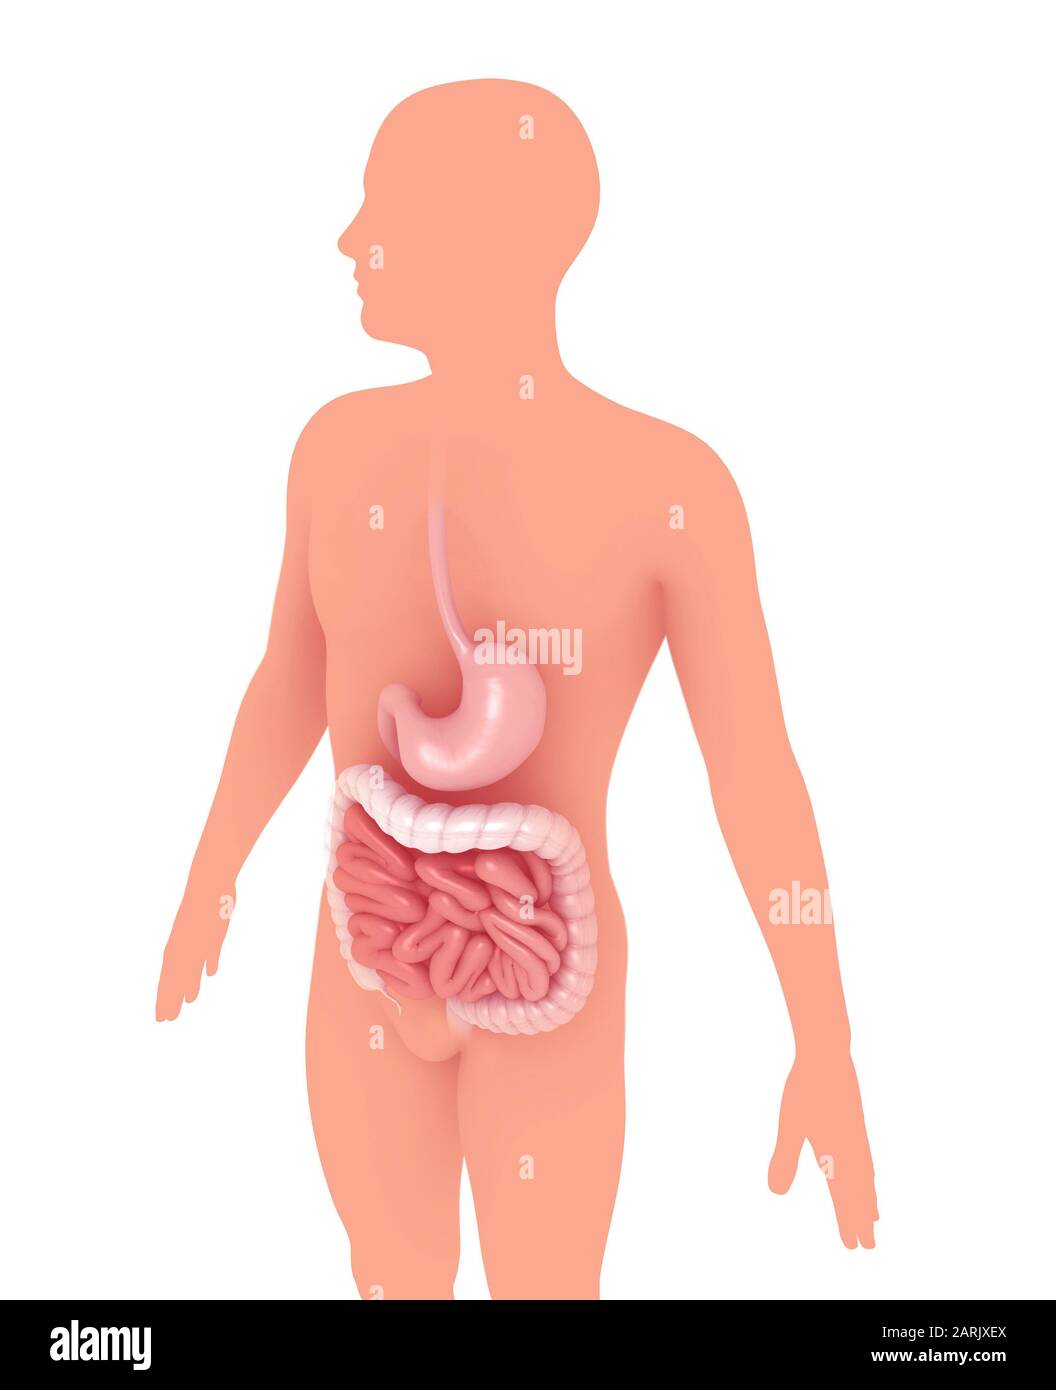 3d illustrazione dell'interno anatomico dell'apparato digerente, dello stomaco e dell'intestino. Sulla silhouette di una persona che si alza graficamente. Foto Stock